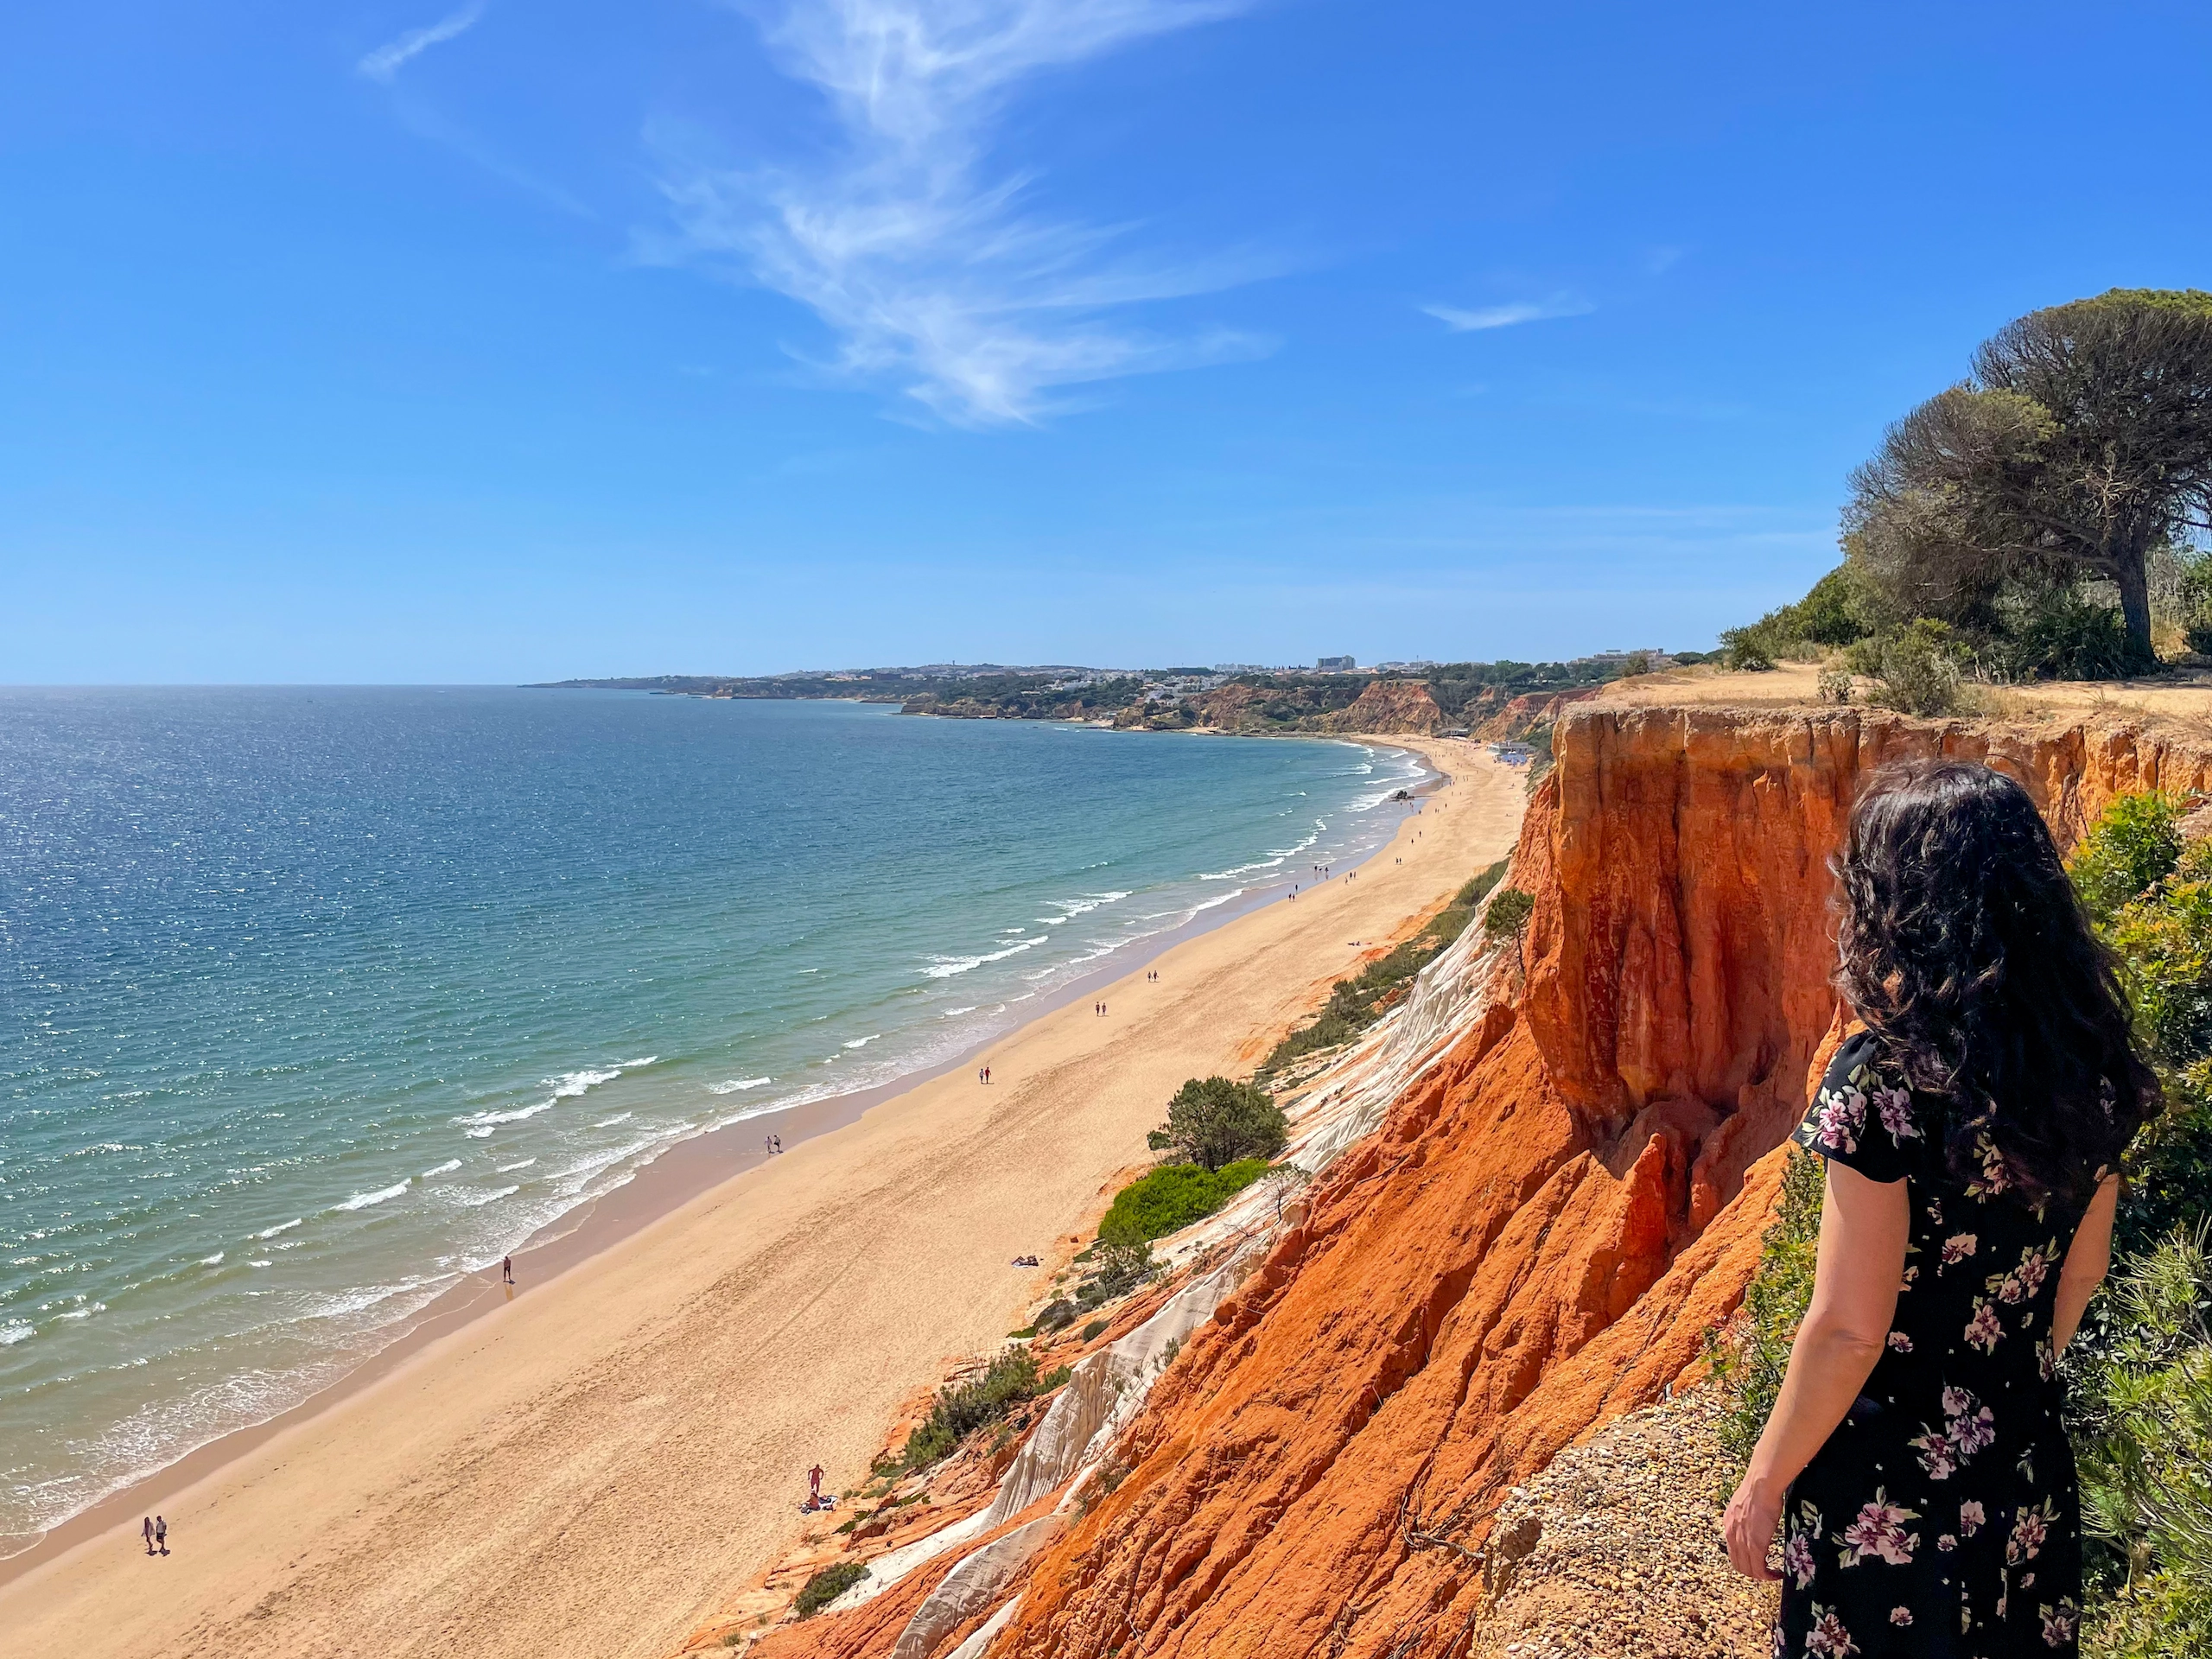 Acantilados de la Playa de Falesia, una de las playas más bonitas del Algarve